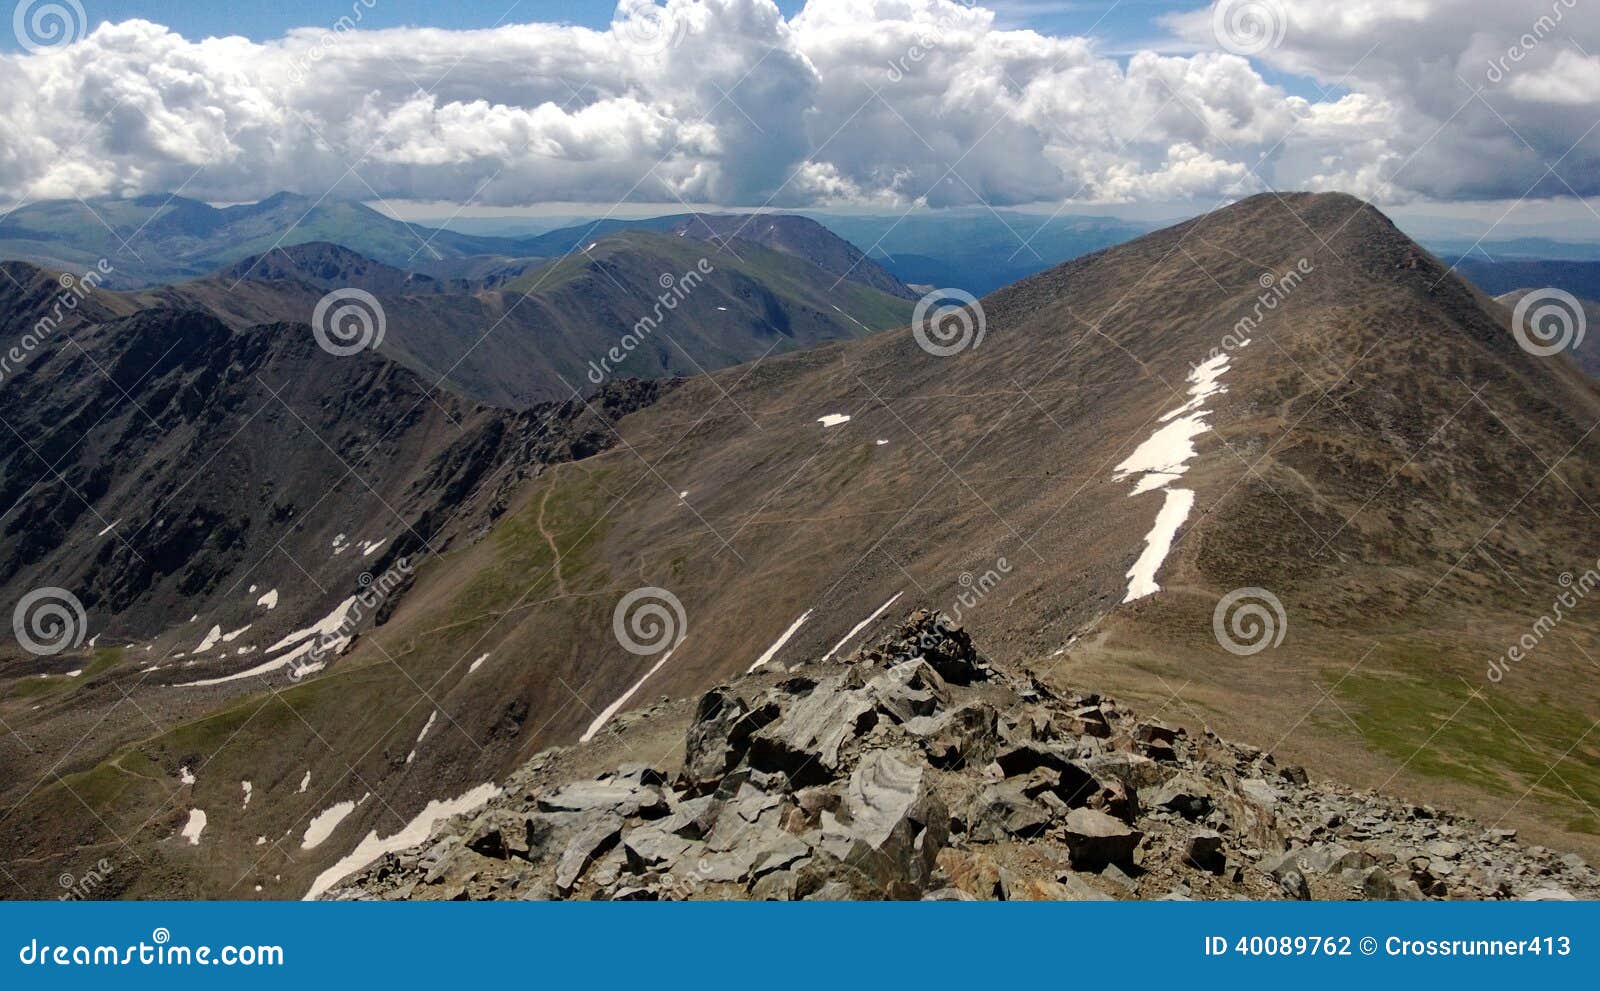 Colorado Peaks stock photo. Image of ridge, colorado - 40089762